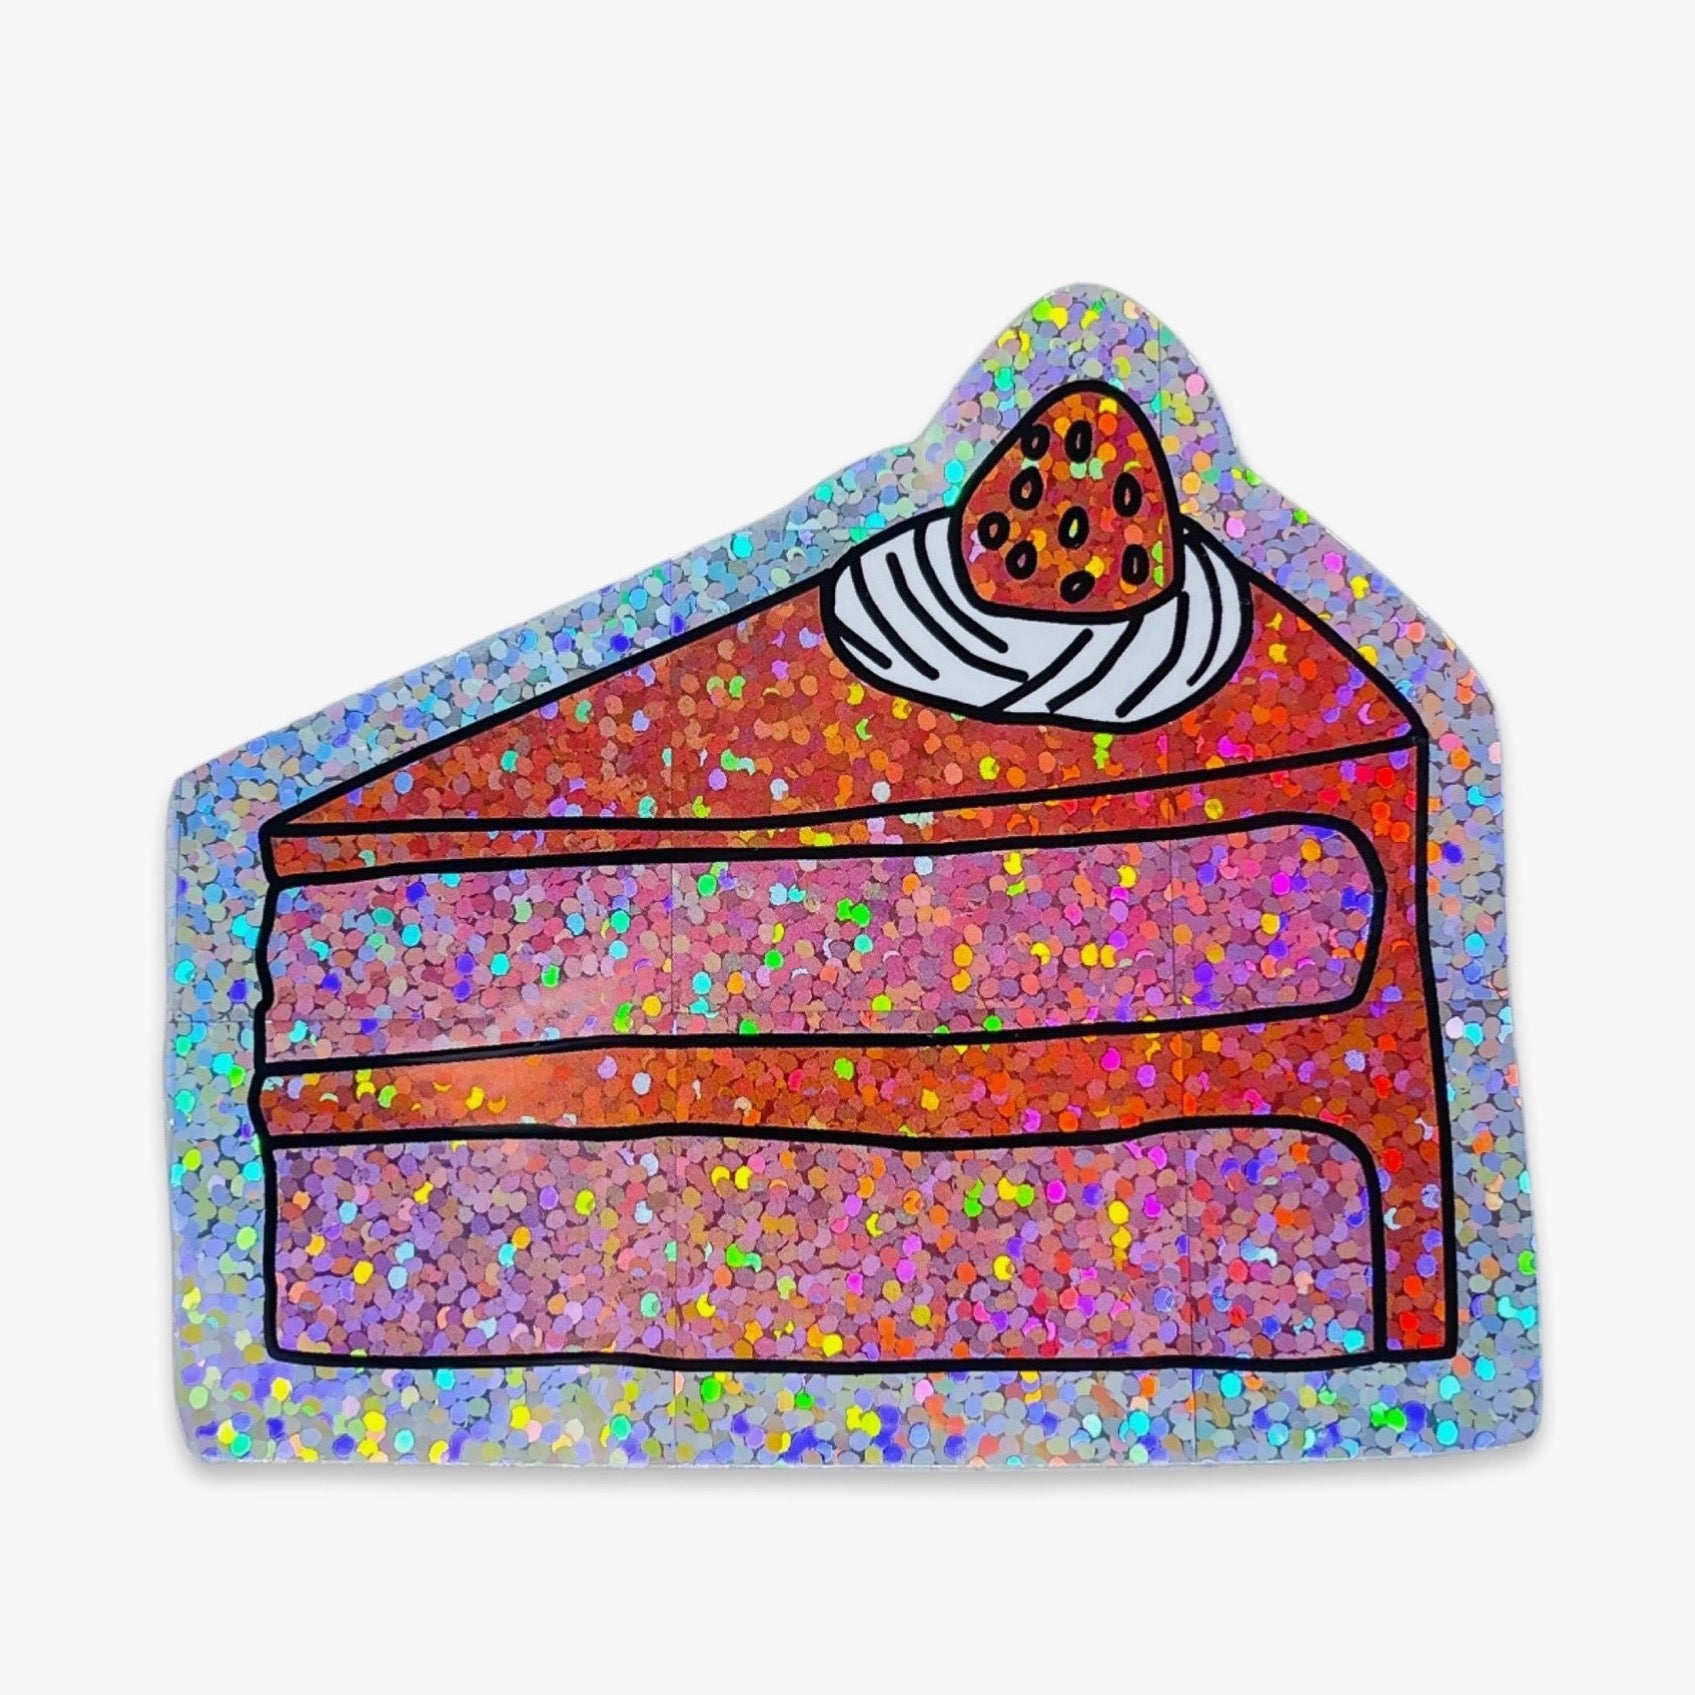 Glitter Cake Slice Sticker by Jenny Lemons